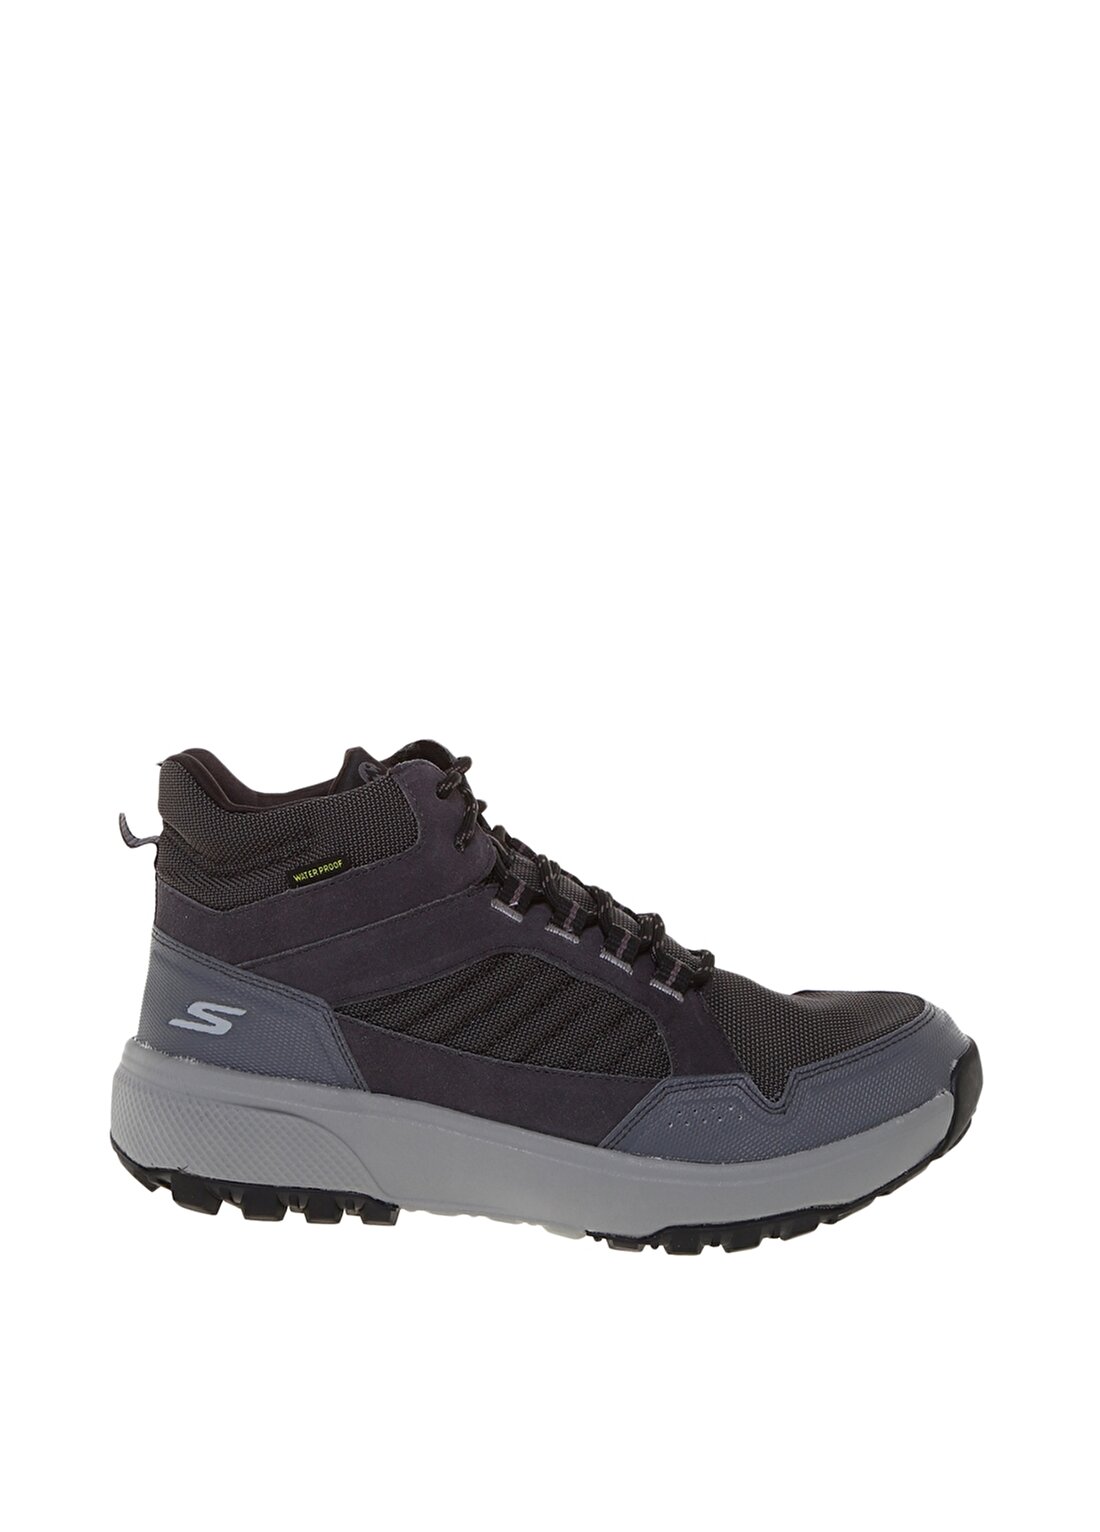 Skechers Waterproof Mavi Yürüyüş Ayakkabısı